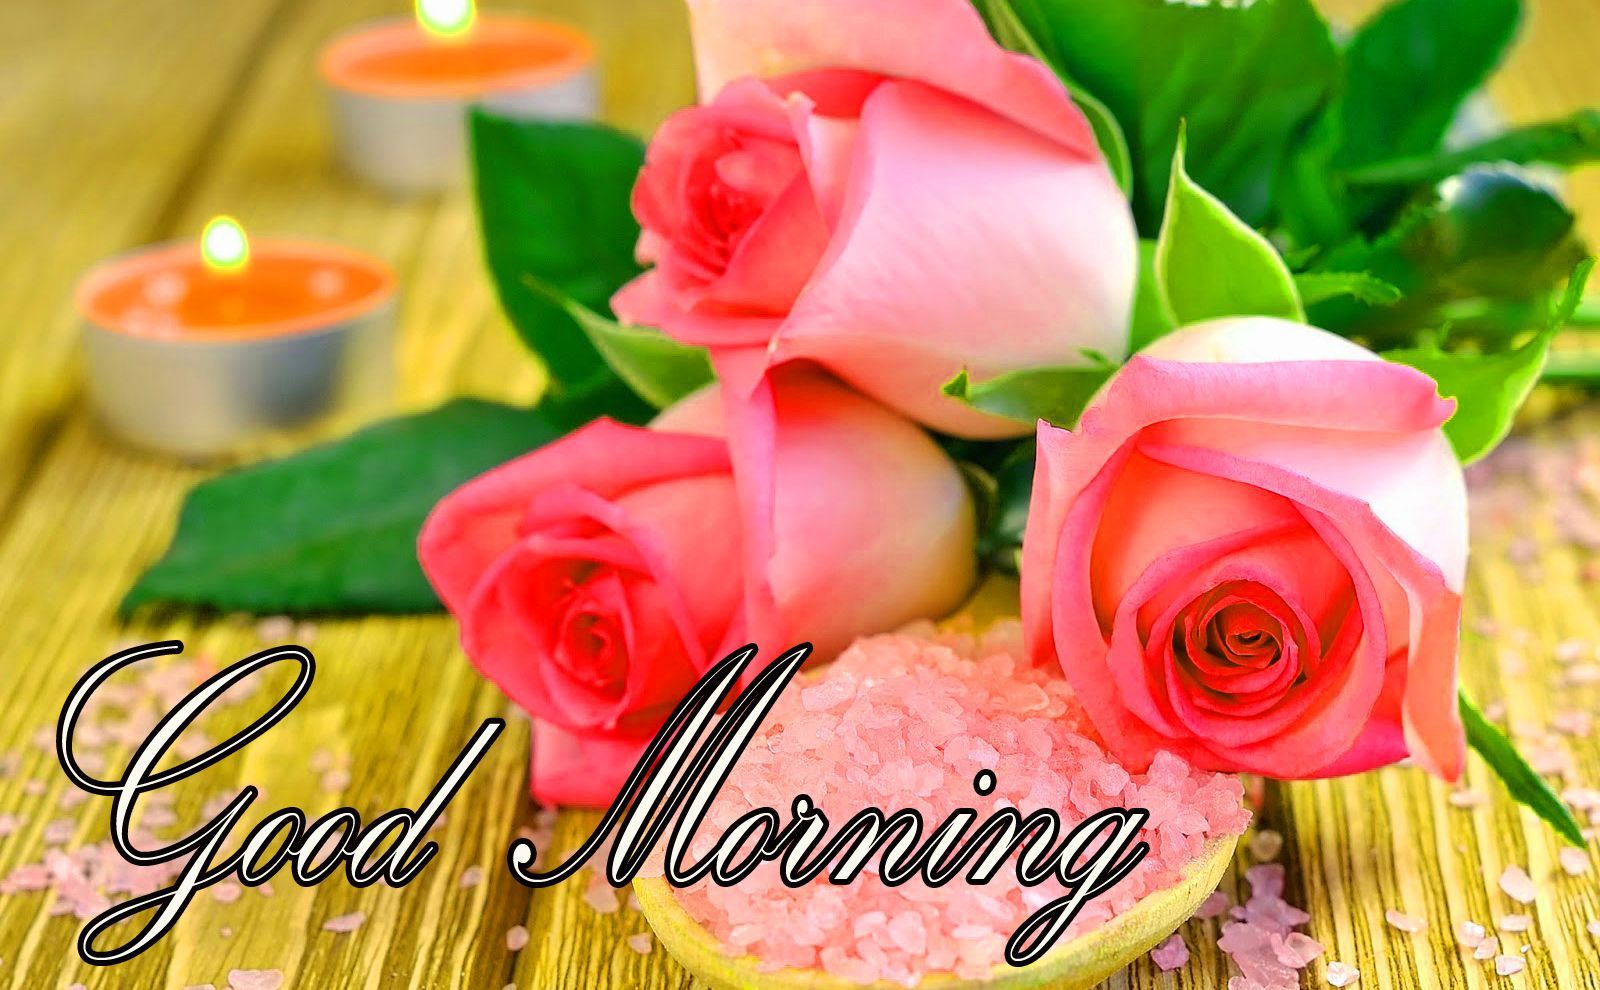 good morning flower image. Good morning flowers, Good morning image, Good morning image download